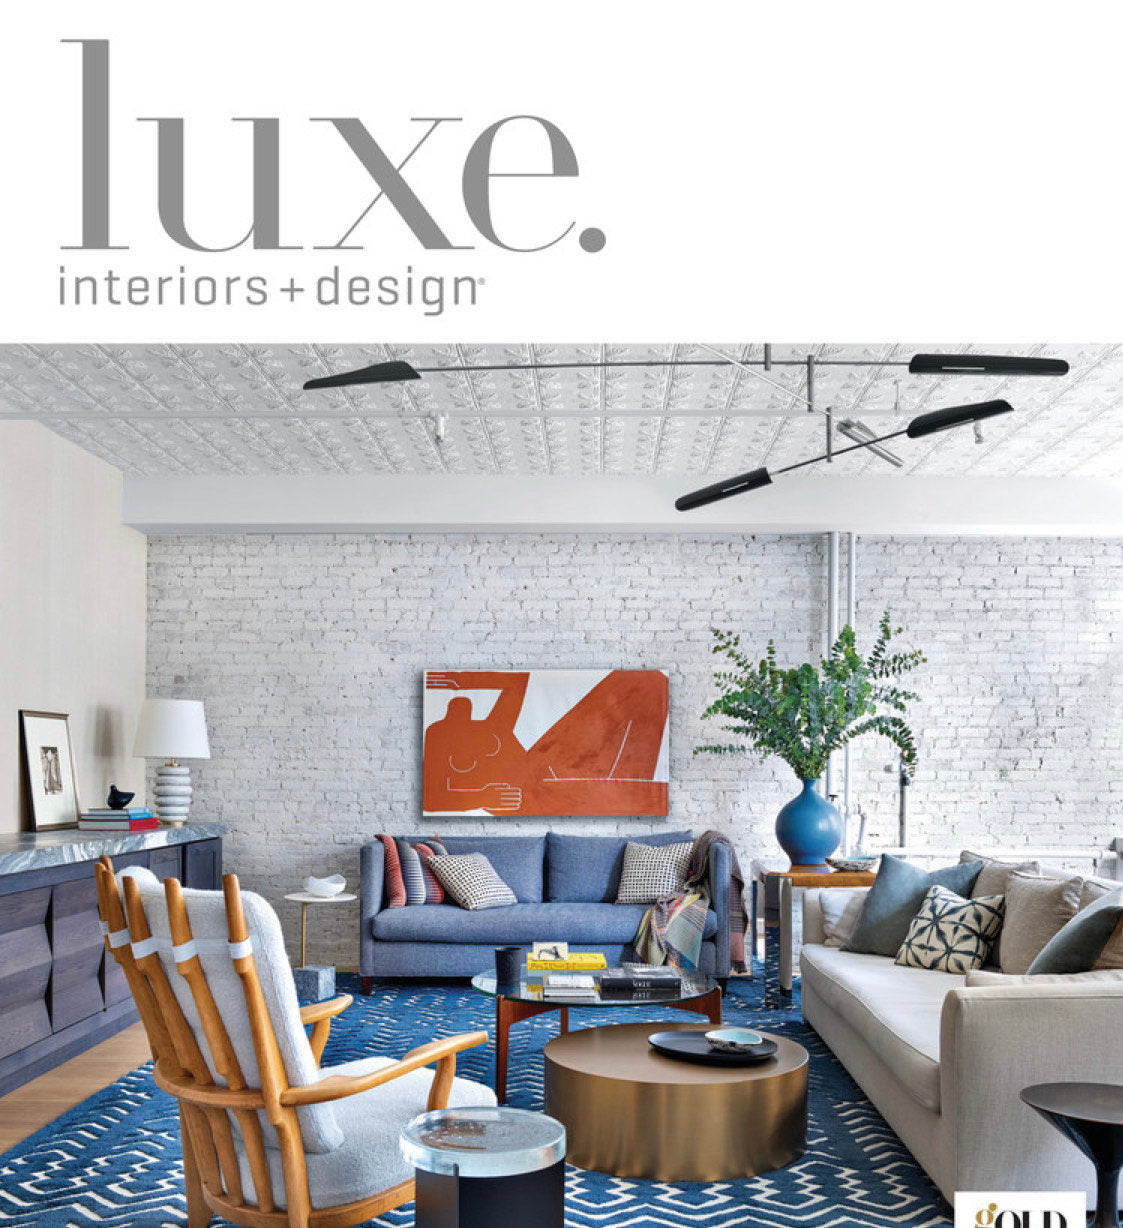 Luxe. interiors + design